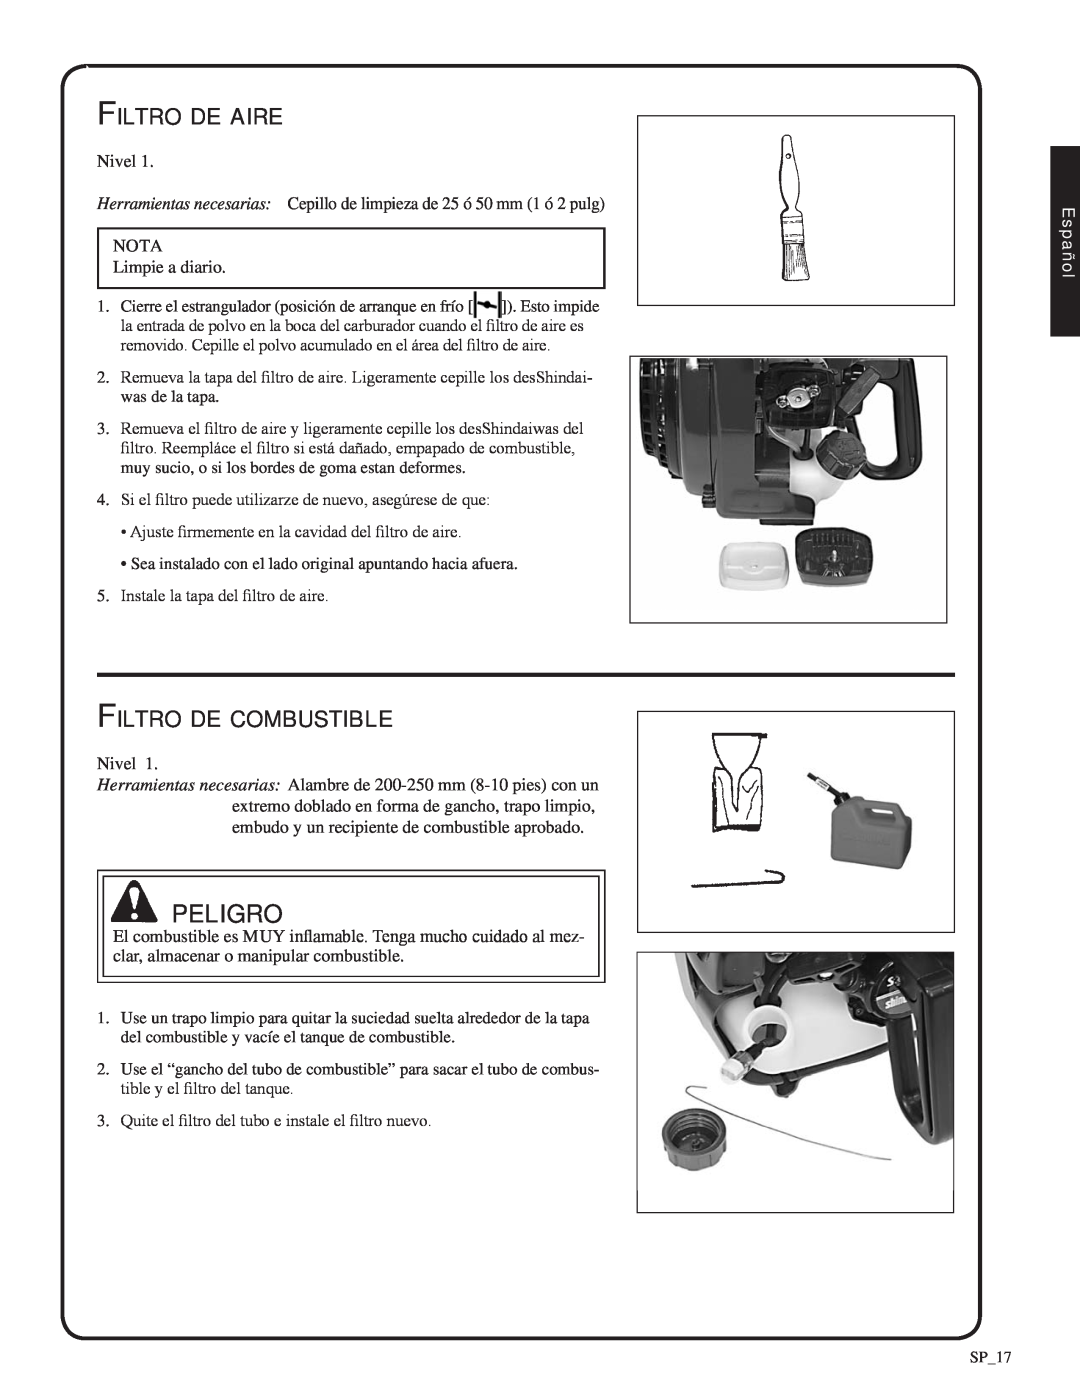 Shindaiwa 82052, SV212 manual peligro, Filtro de aire, Filtro de combustible, Español 